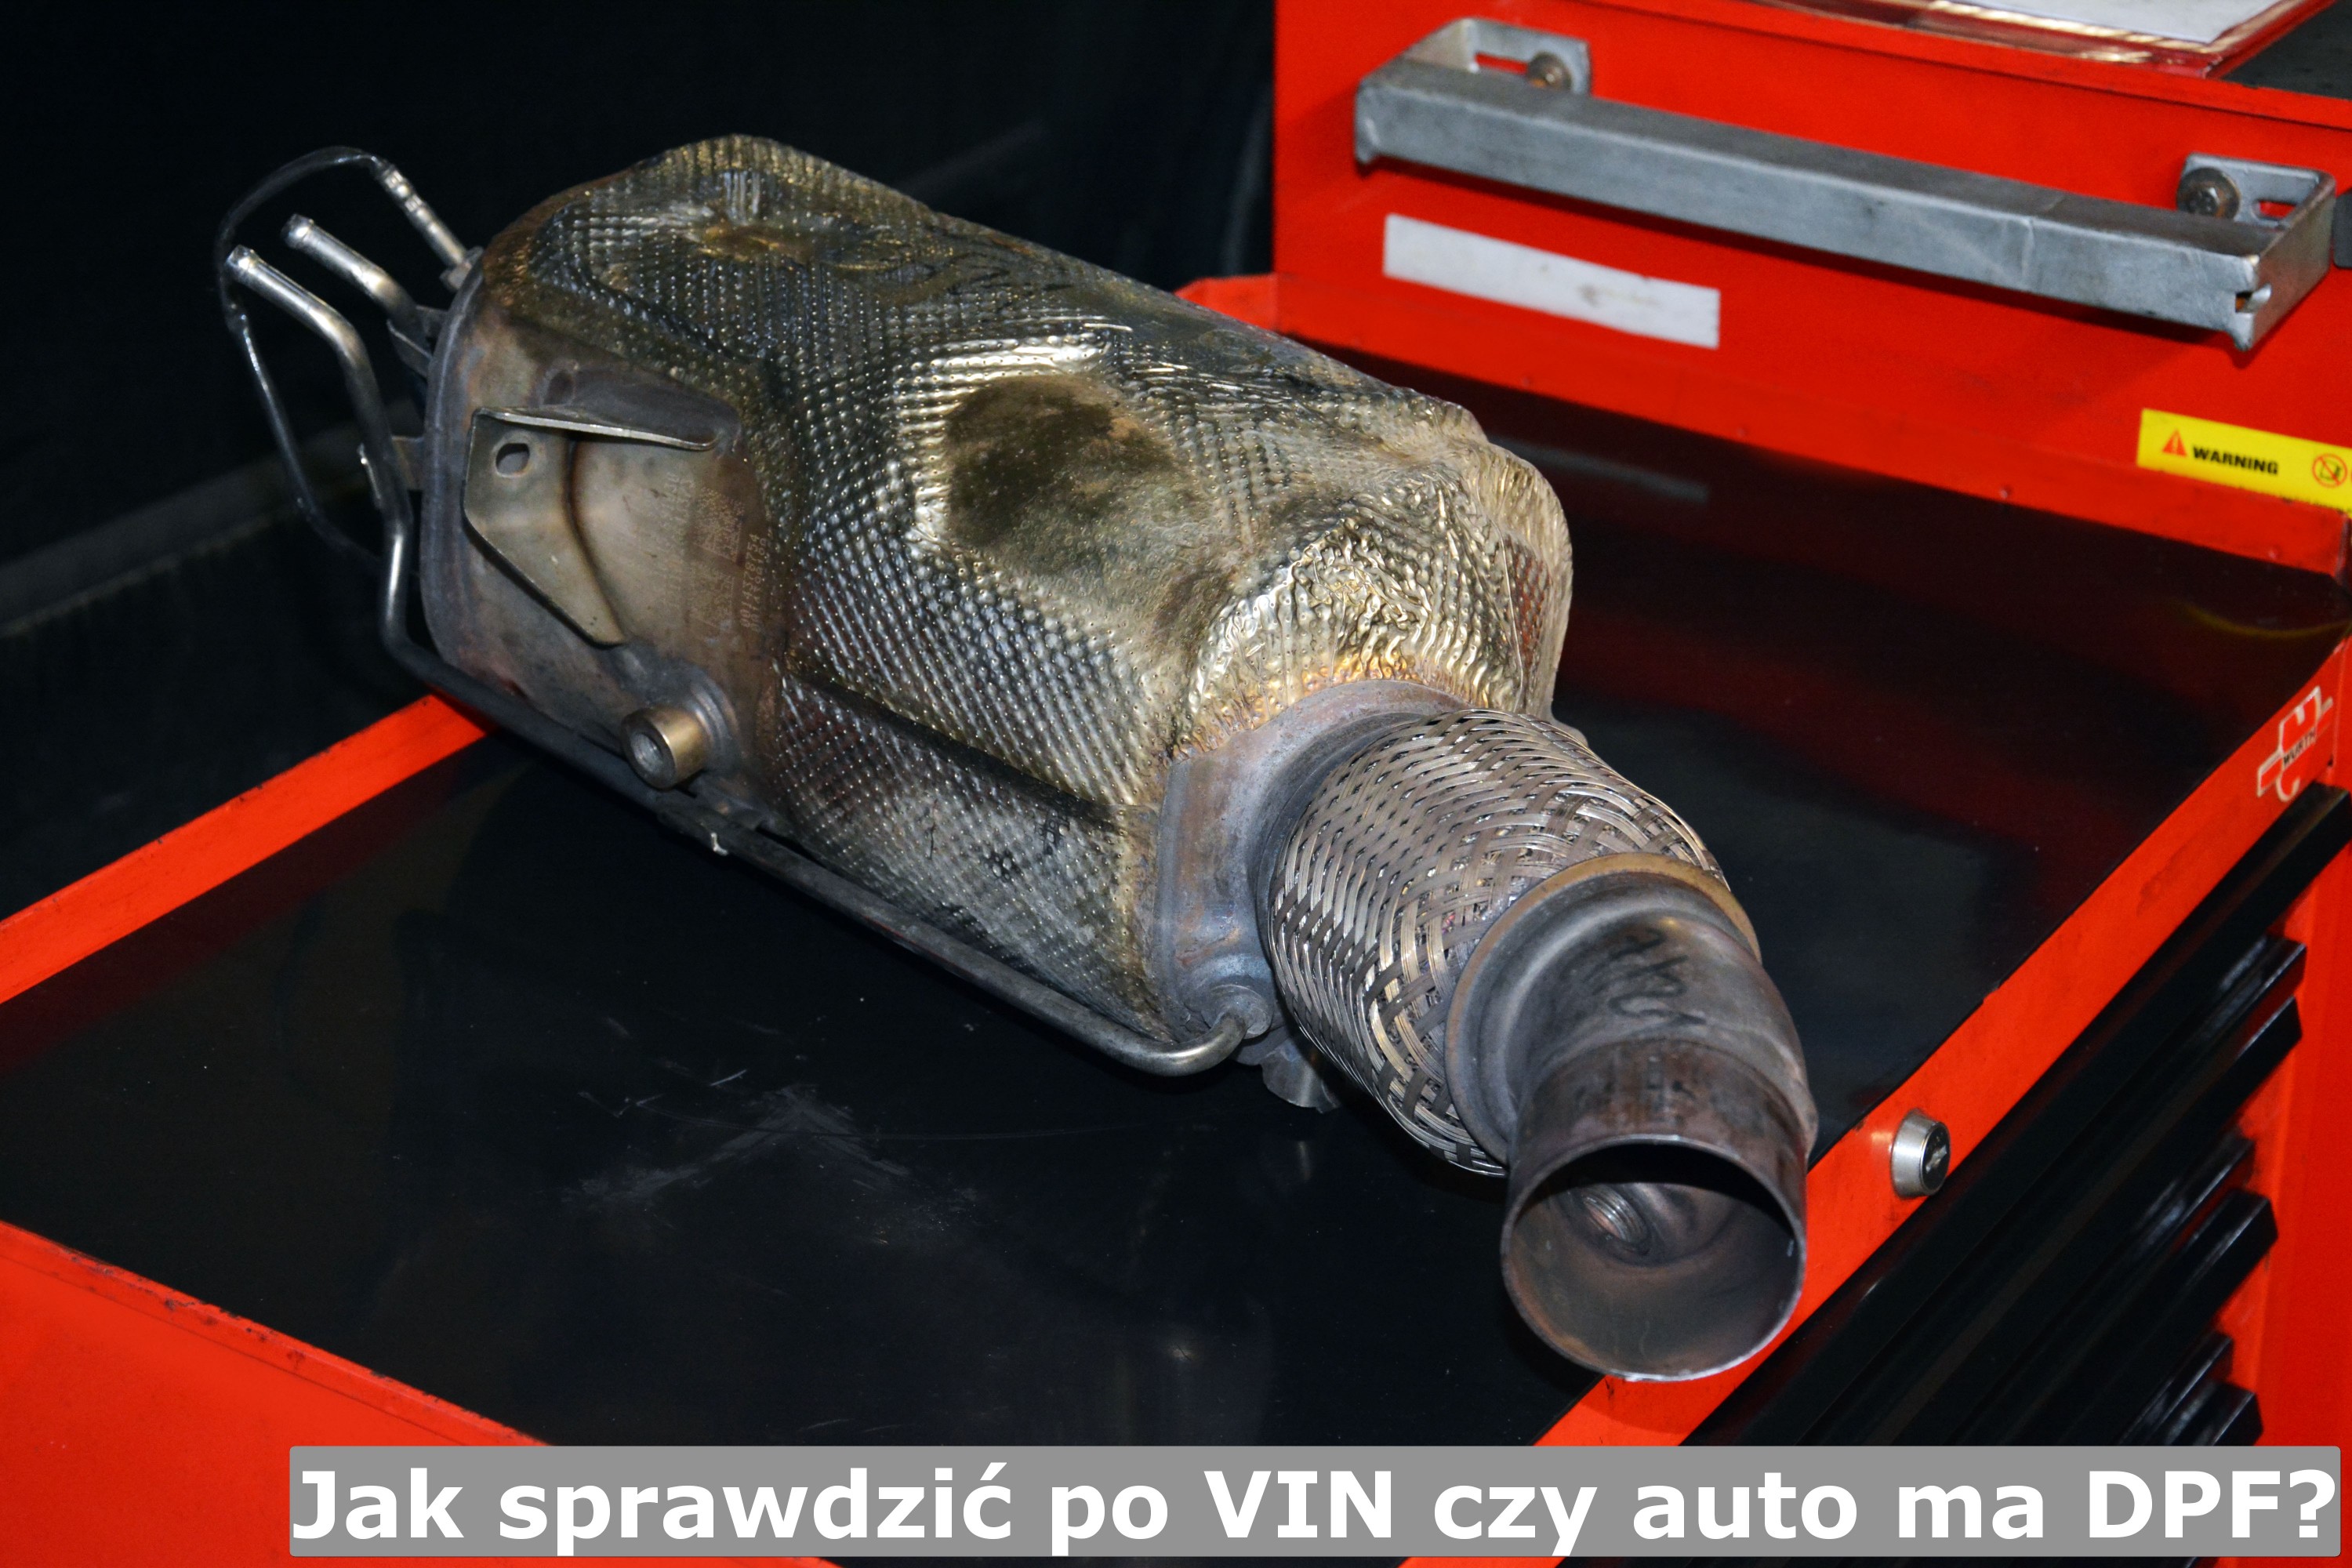 Jak sprawdzić po VIN czy auto ma DPF? filtrydpffap.pl